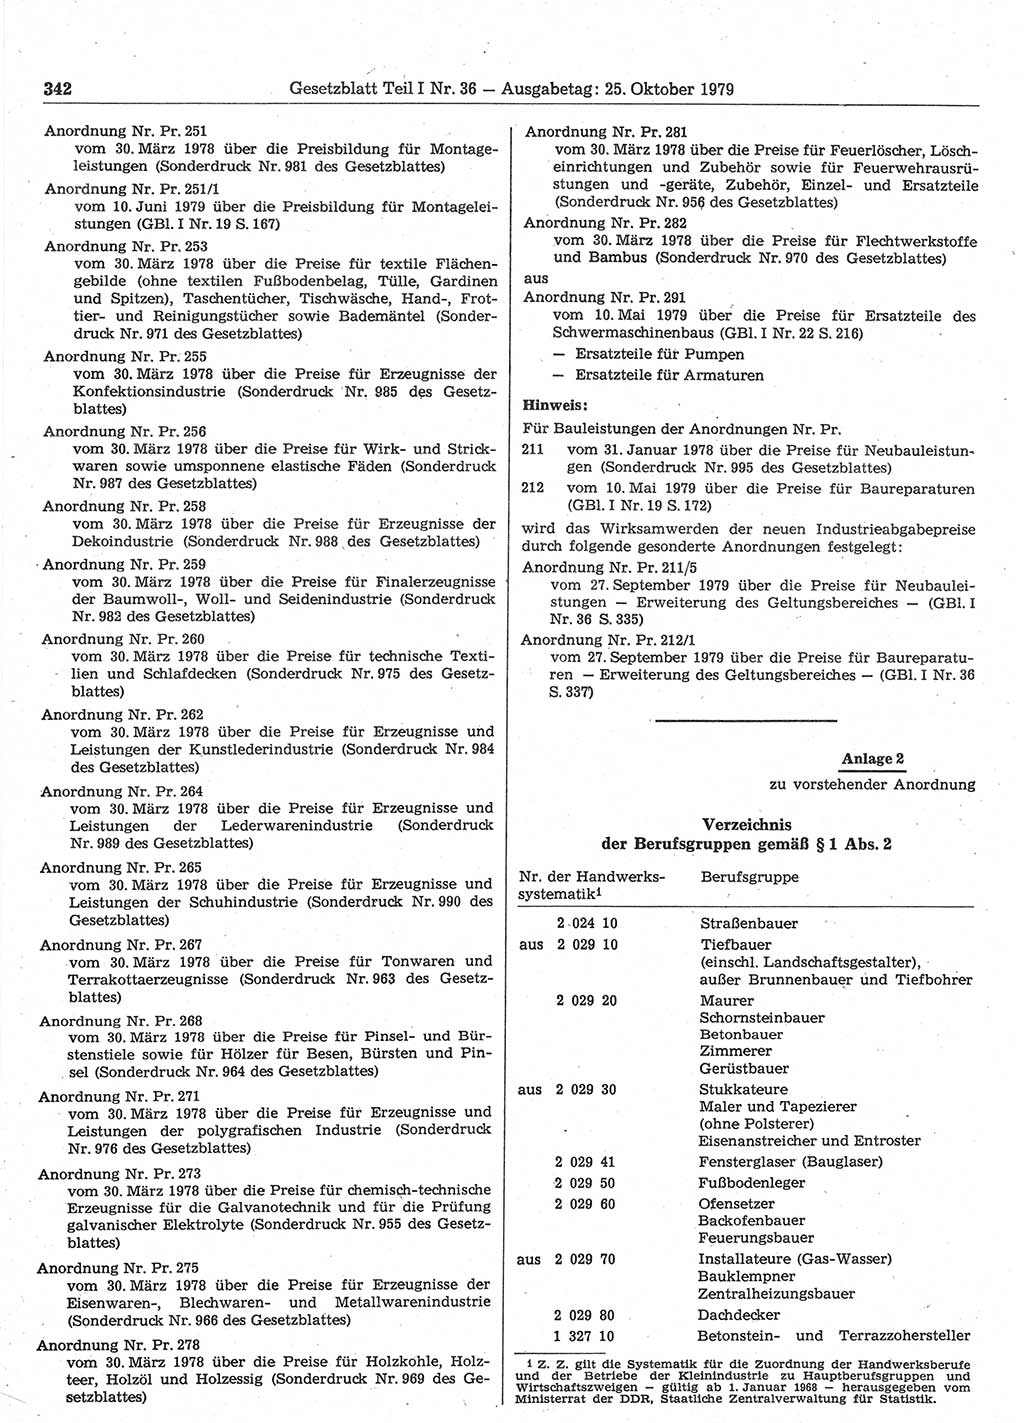 Gesetzblatt (GBl.) der Deutschen Demokratischen Republik (DDR) Teil Ⅰ 1979, Seite 342 (GBl. DDR Ⅰ 1979, S. 342)